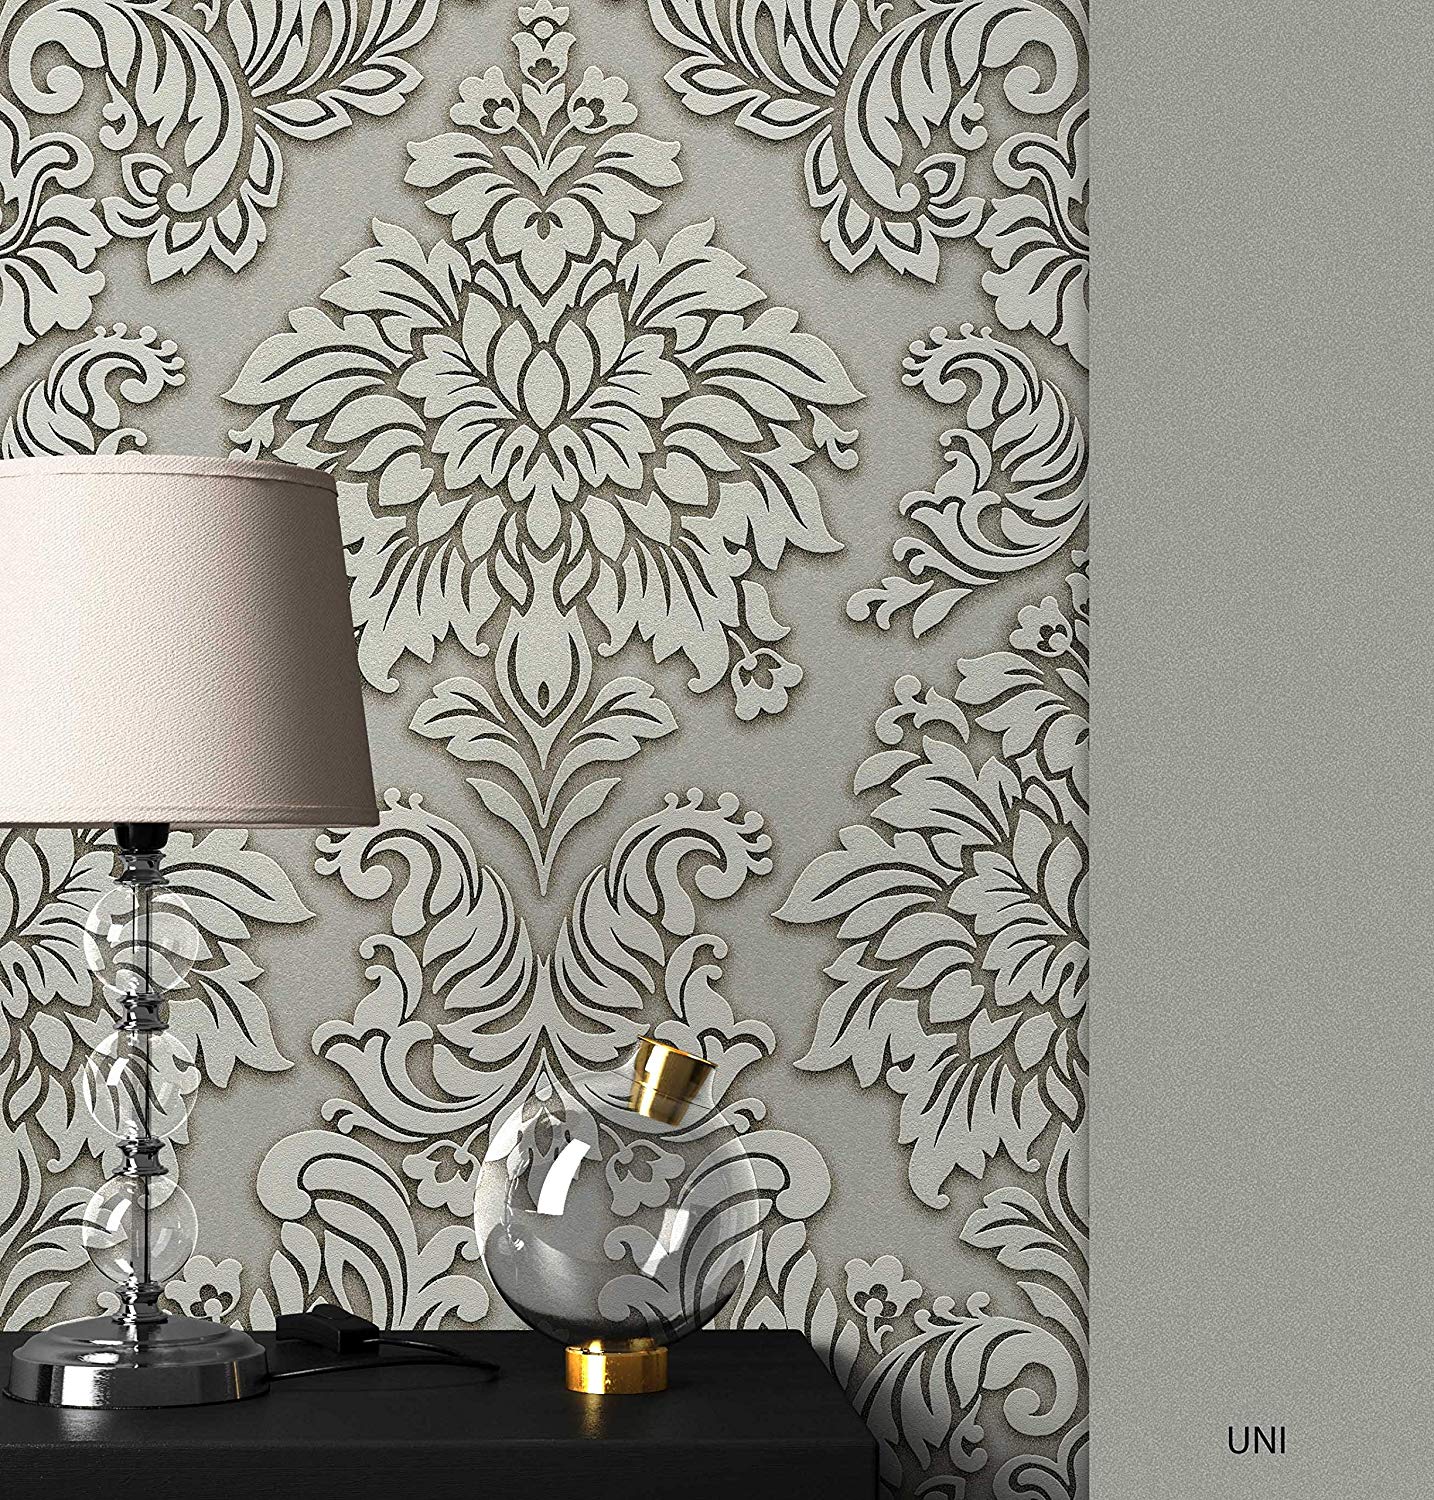 Newroom Design Newroom Baroque Wallpaper Beige Ornamental Baroque Design Non-Woven Wallpap